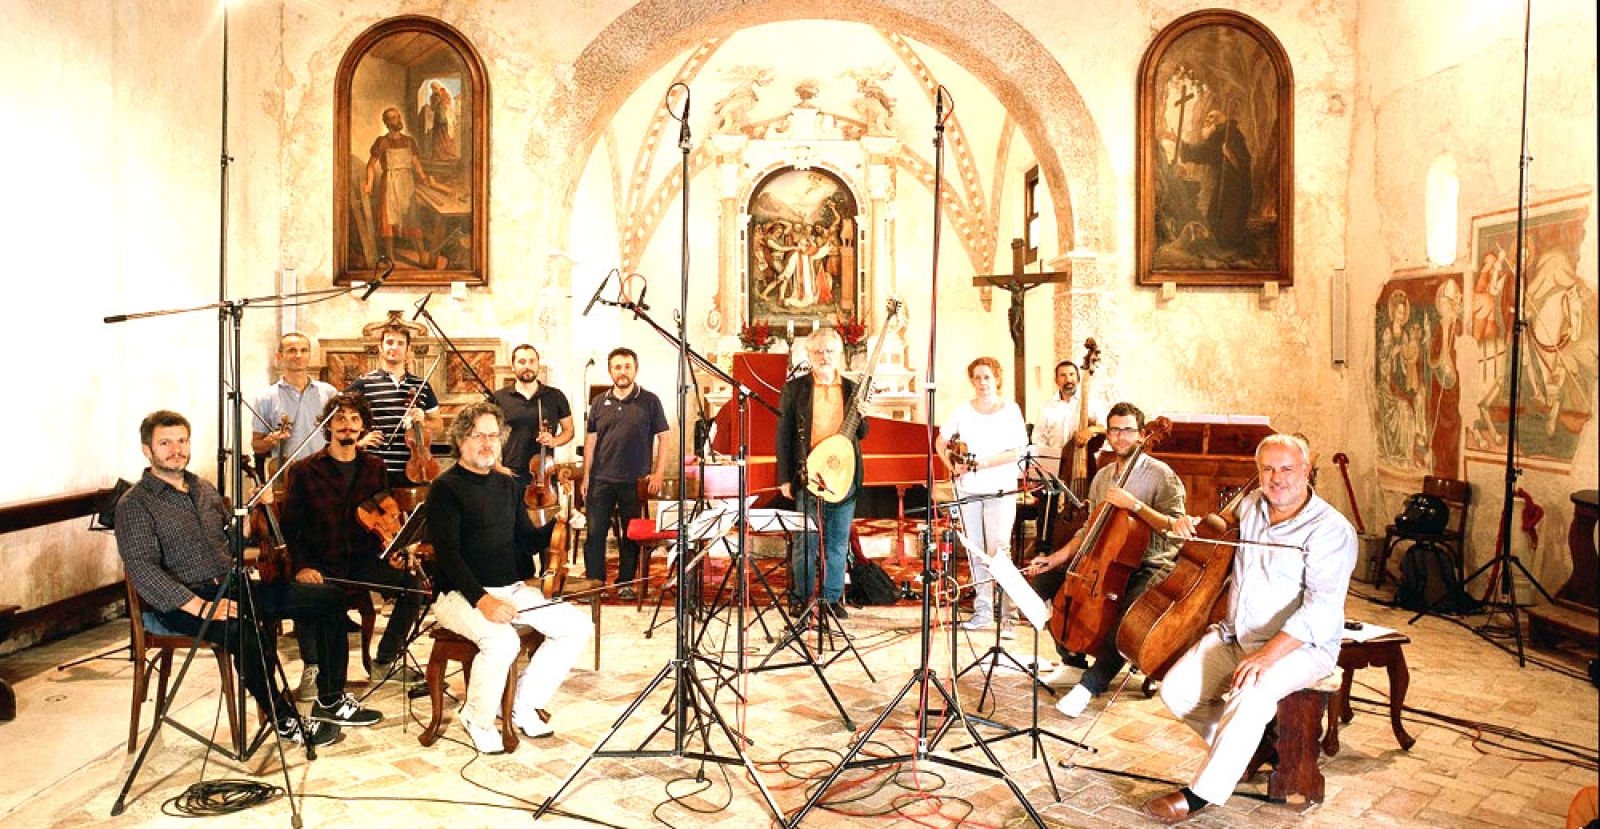 Sonatori de la Gioiosa Marca before the concert